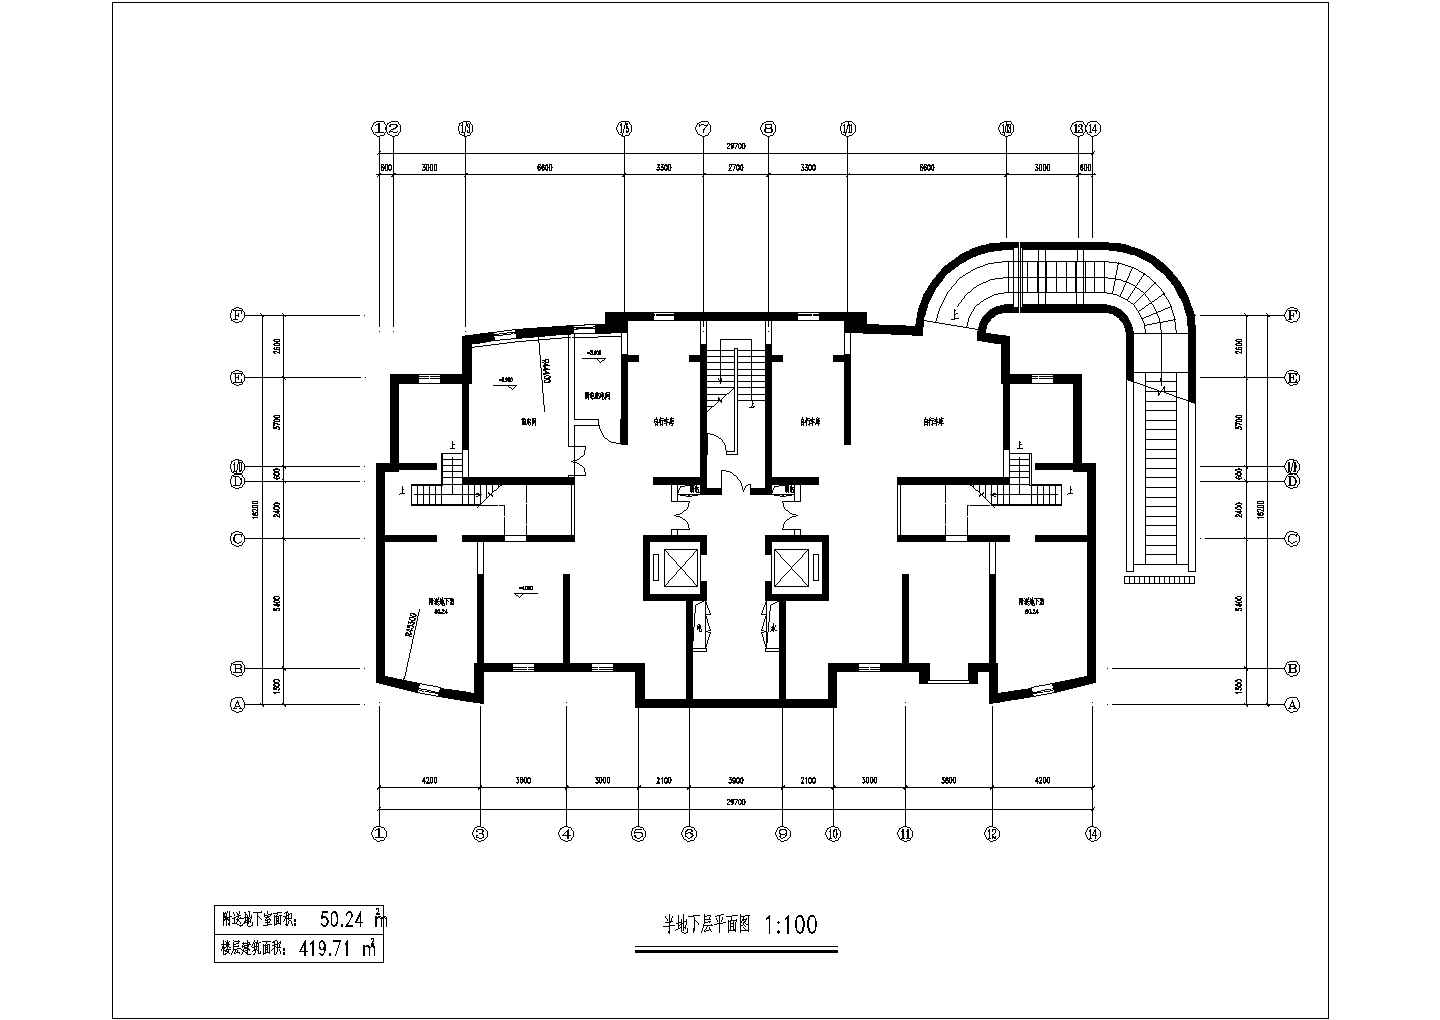 二十六层一楼梯二电梯二户三室二厅一书房户型住宅楼设计图建筑图